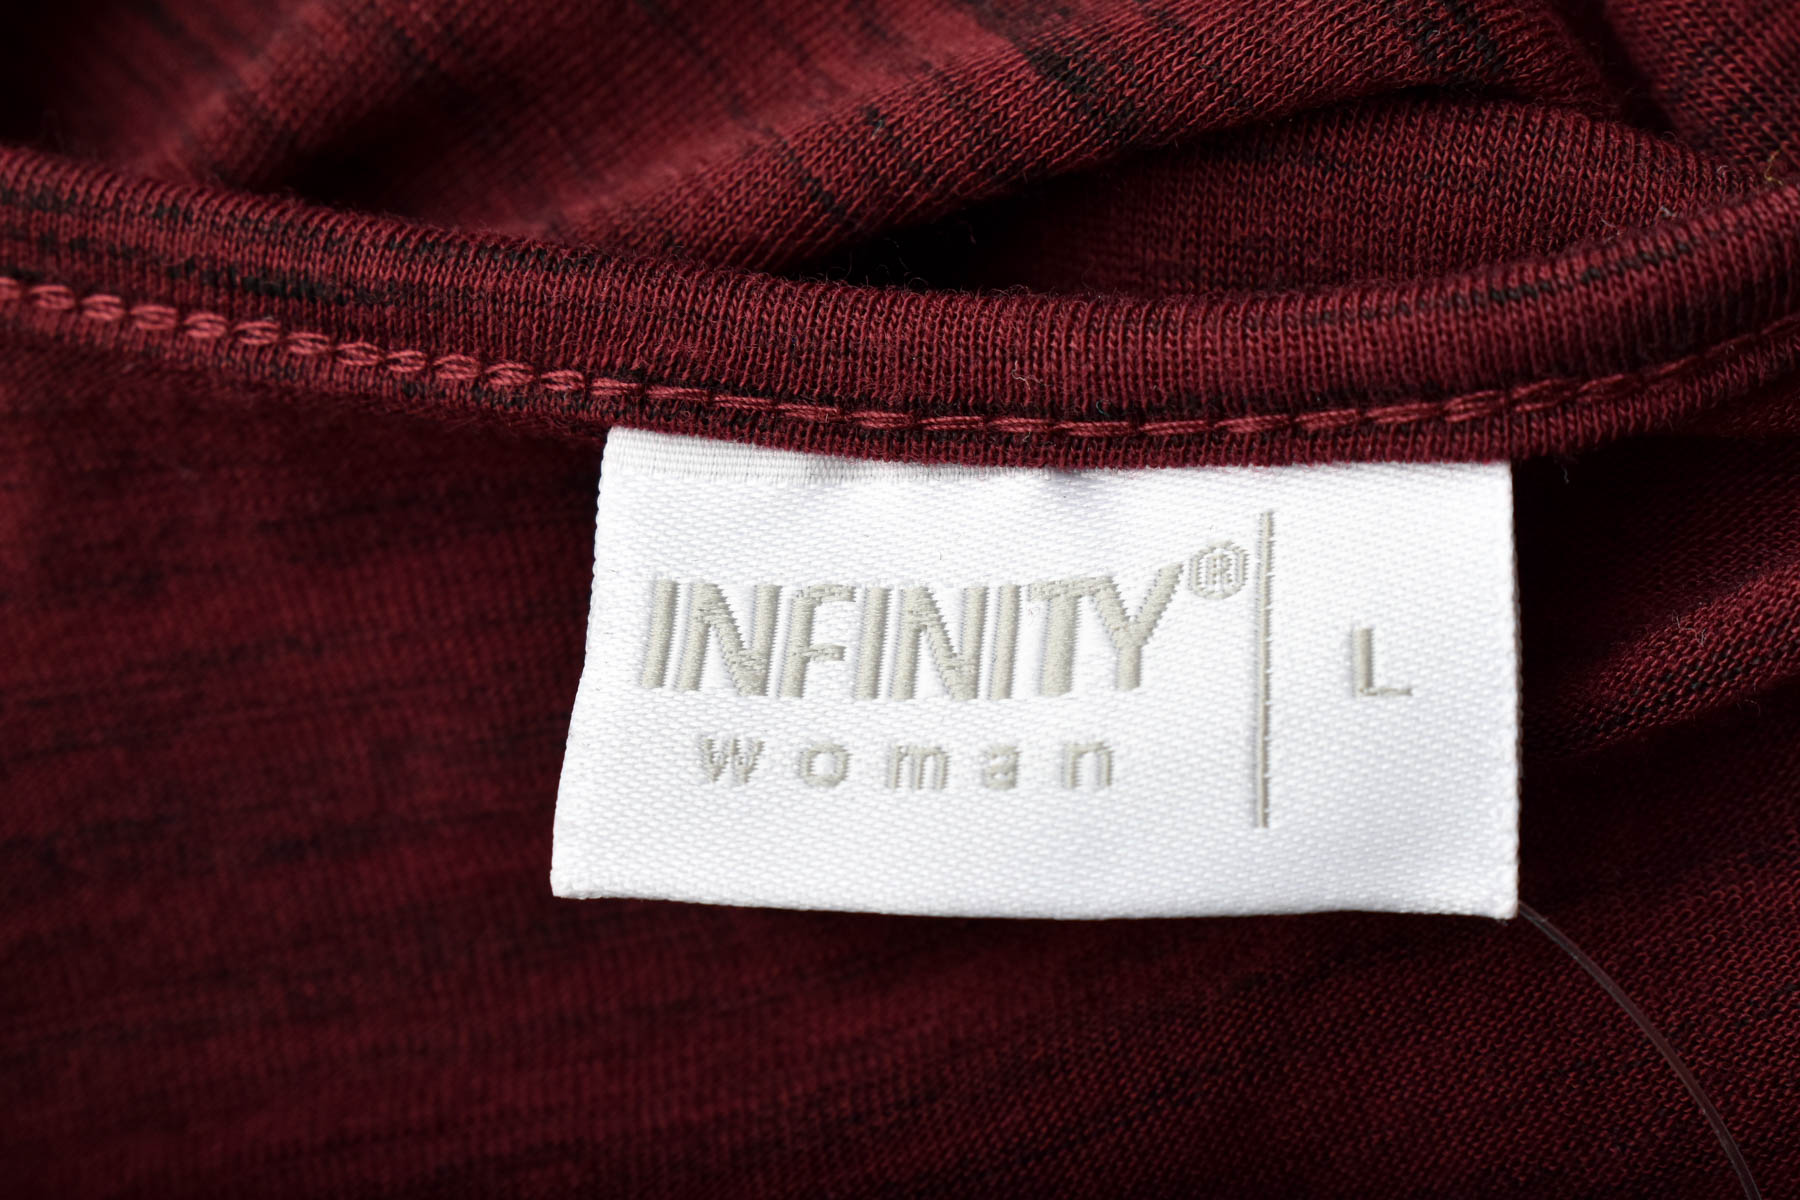 Дамска блуза - Infinity Woman - 2